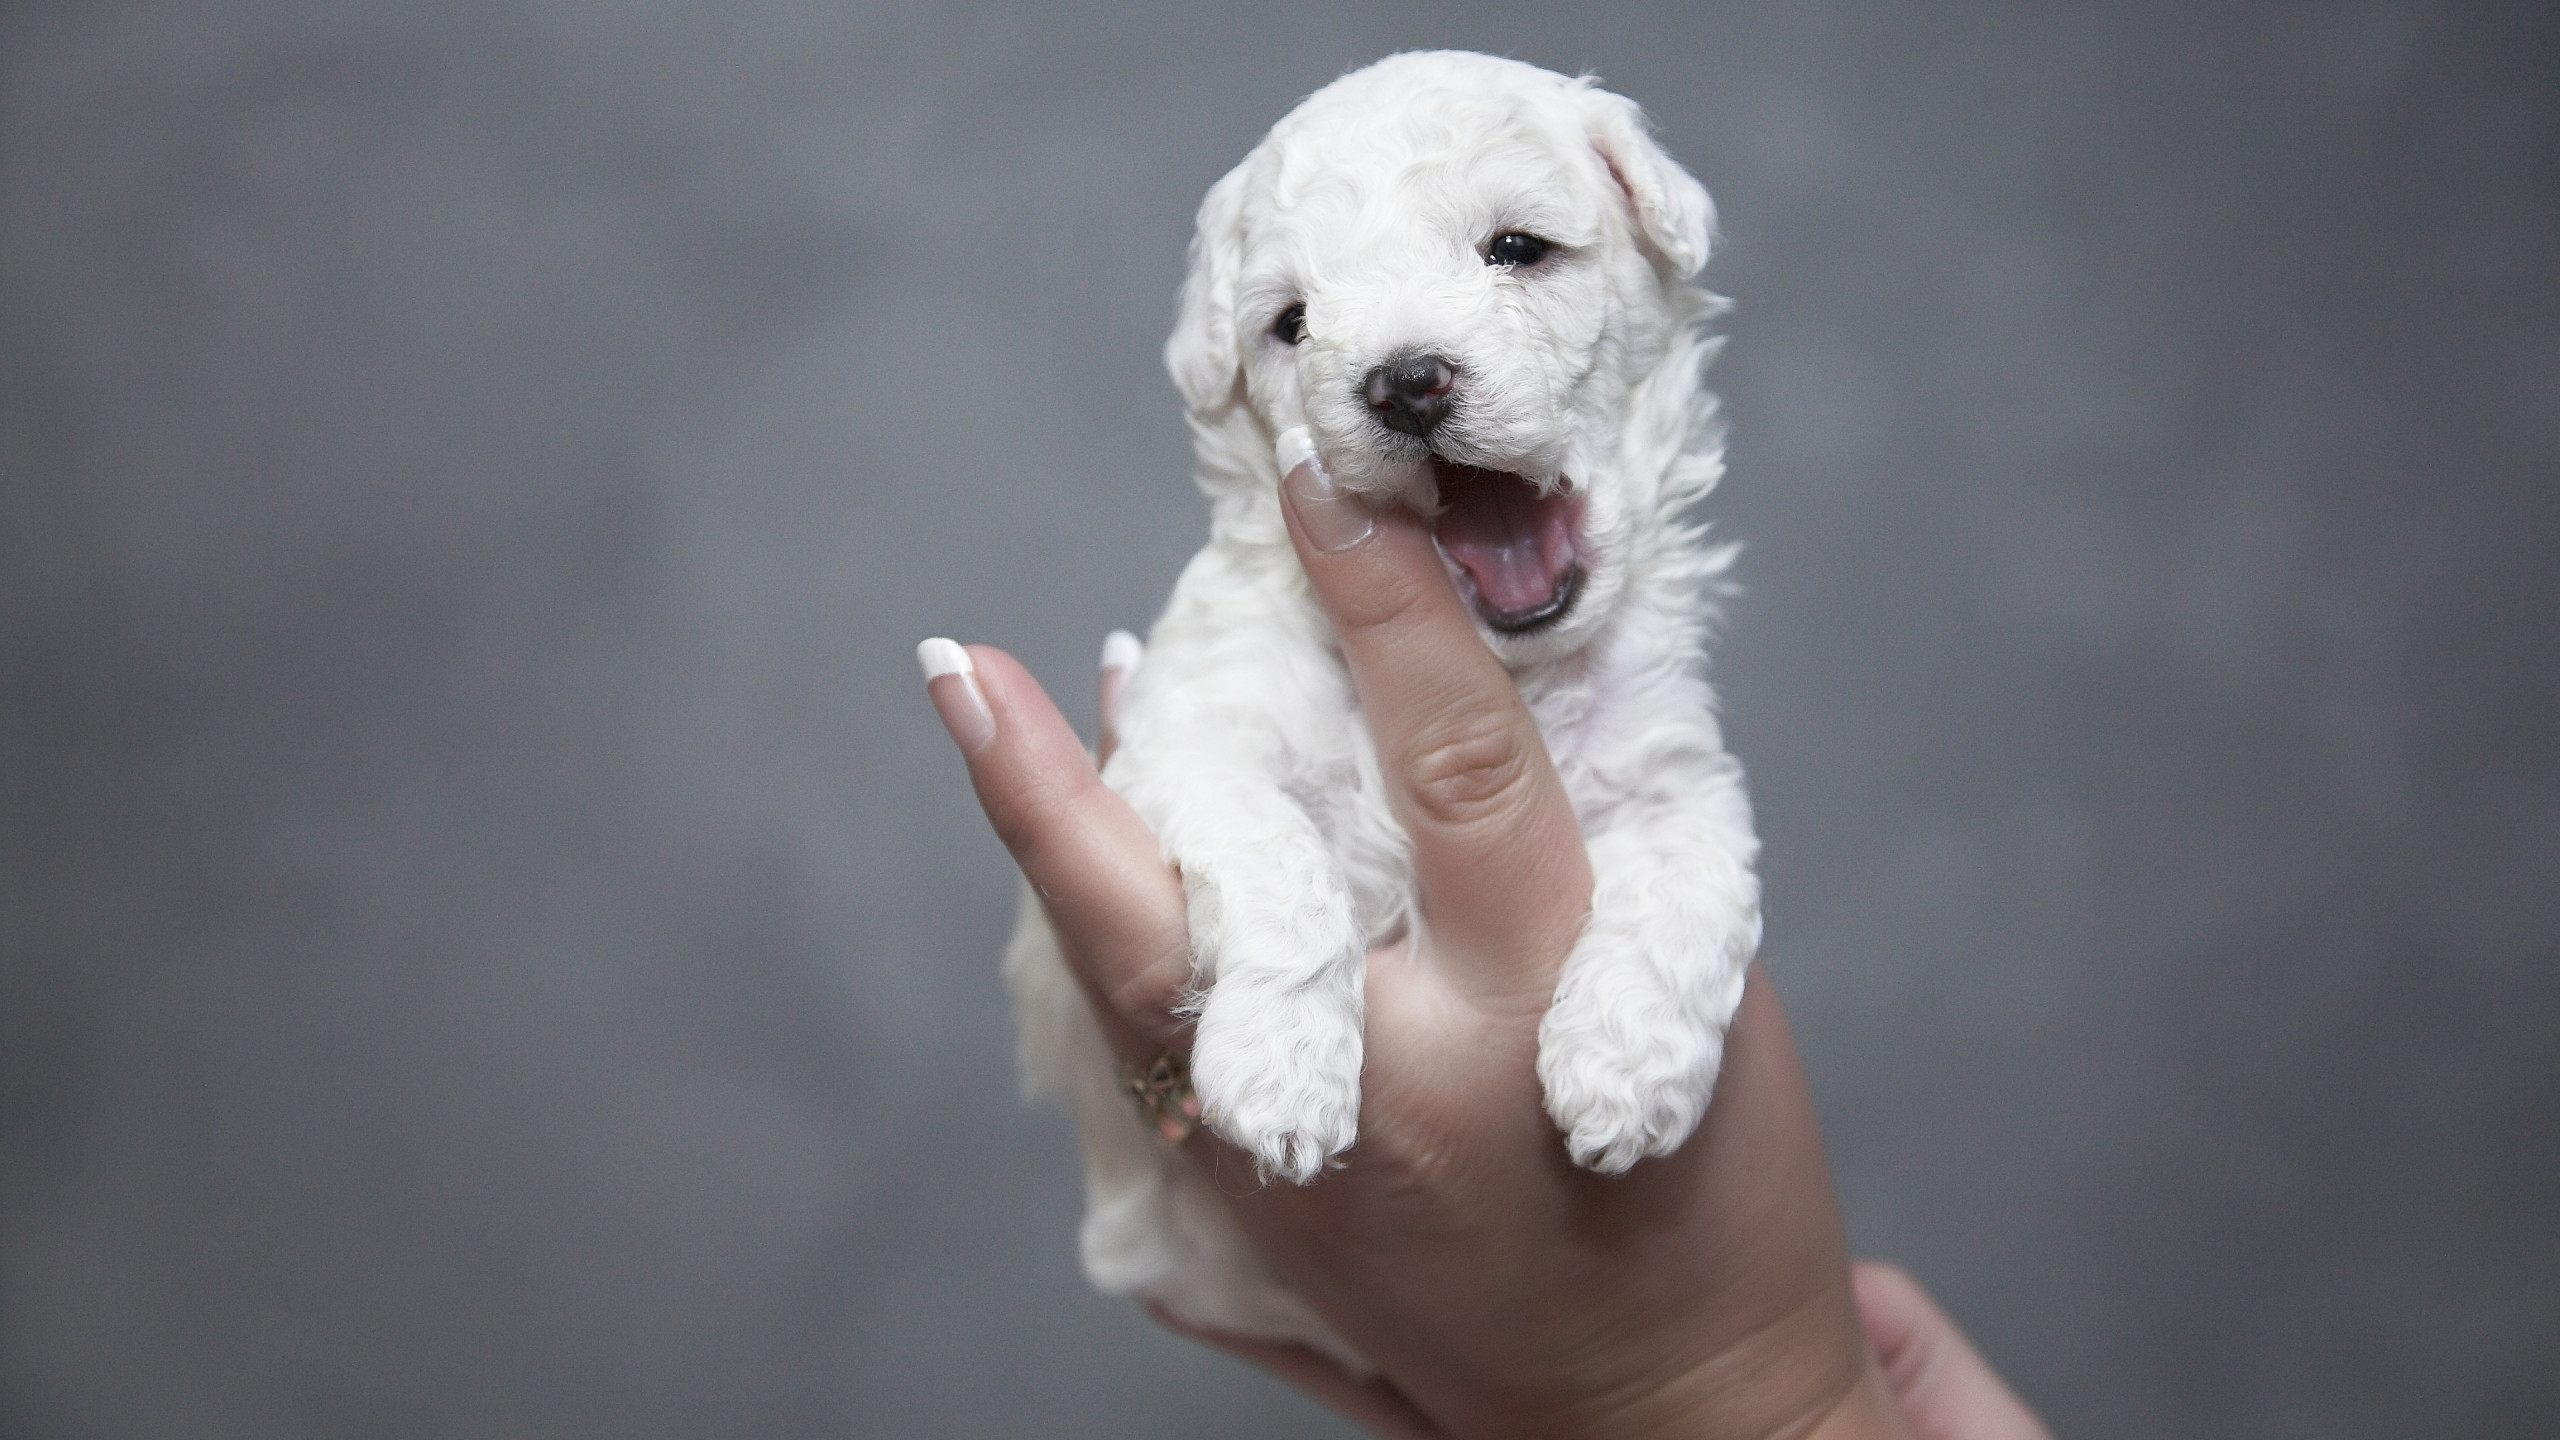 Cutest white puppy wallpaper 2560x1440